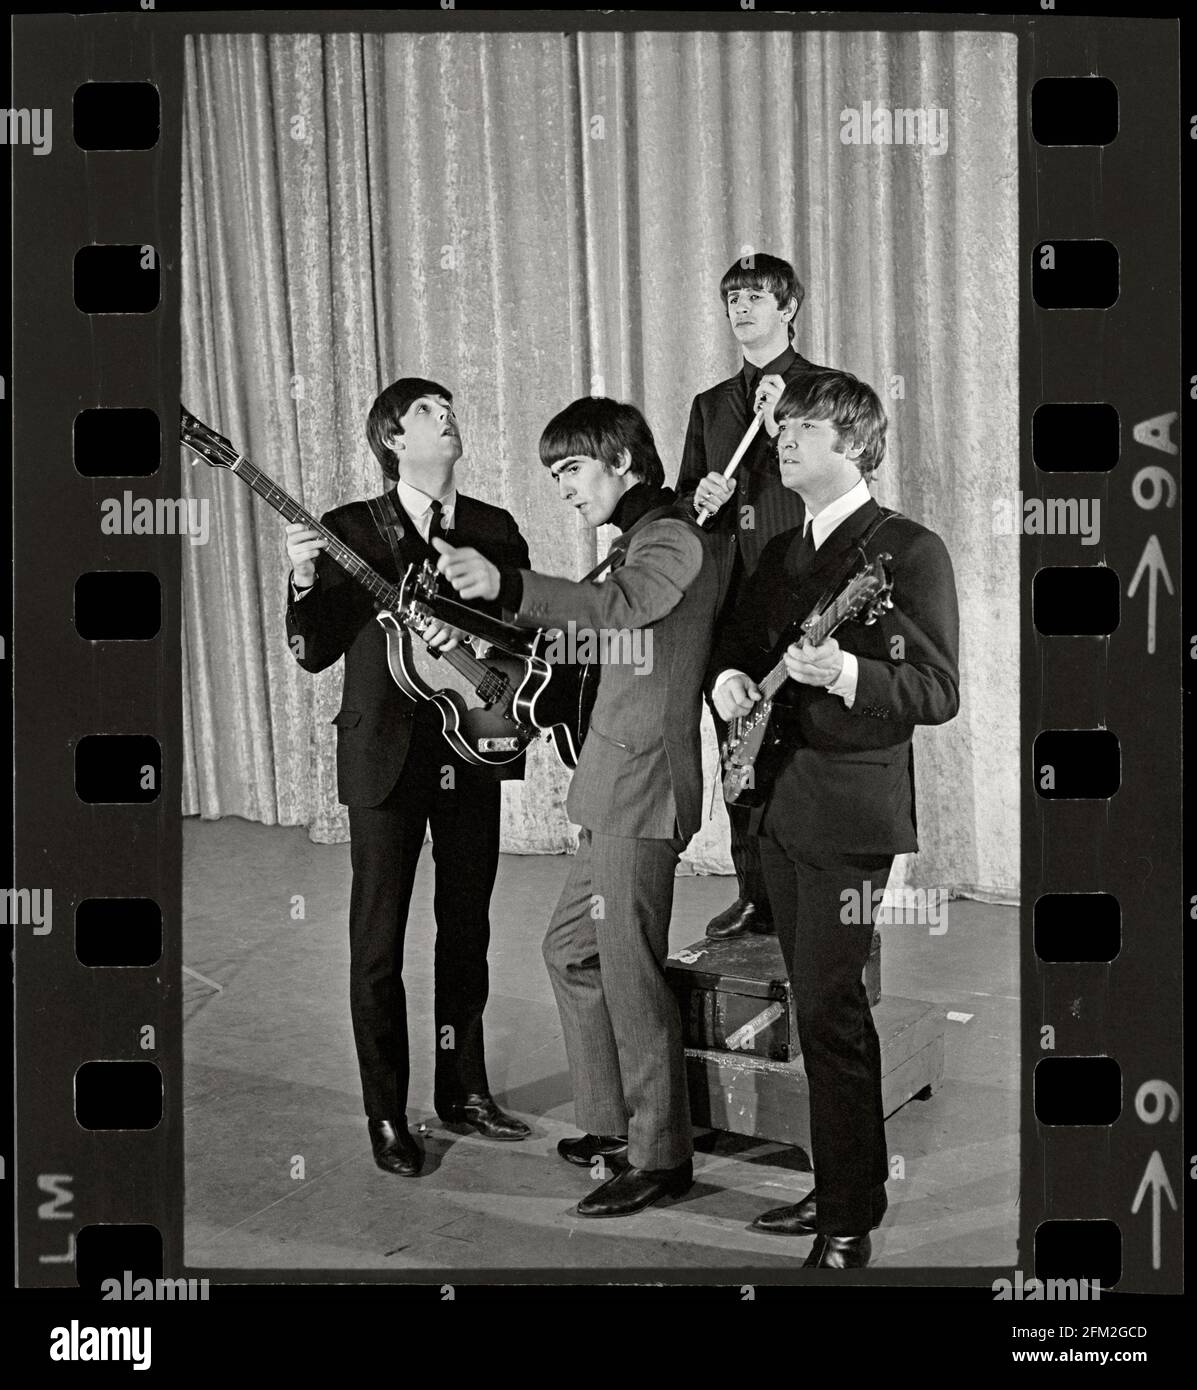 Paul McCartney, George Harrison, Ringo Starr und John Lennon von den Beatles stehen vor dem zweiten Auftritt der Gruppe auf der Ed Sullivan Show am 16. Februar 1964 im Deauville Hotel in Miami Beach, Florida, auf der Bühne. Bild aus 35-mm-Negativ. Stockfoto